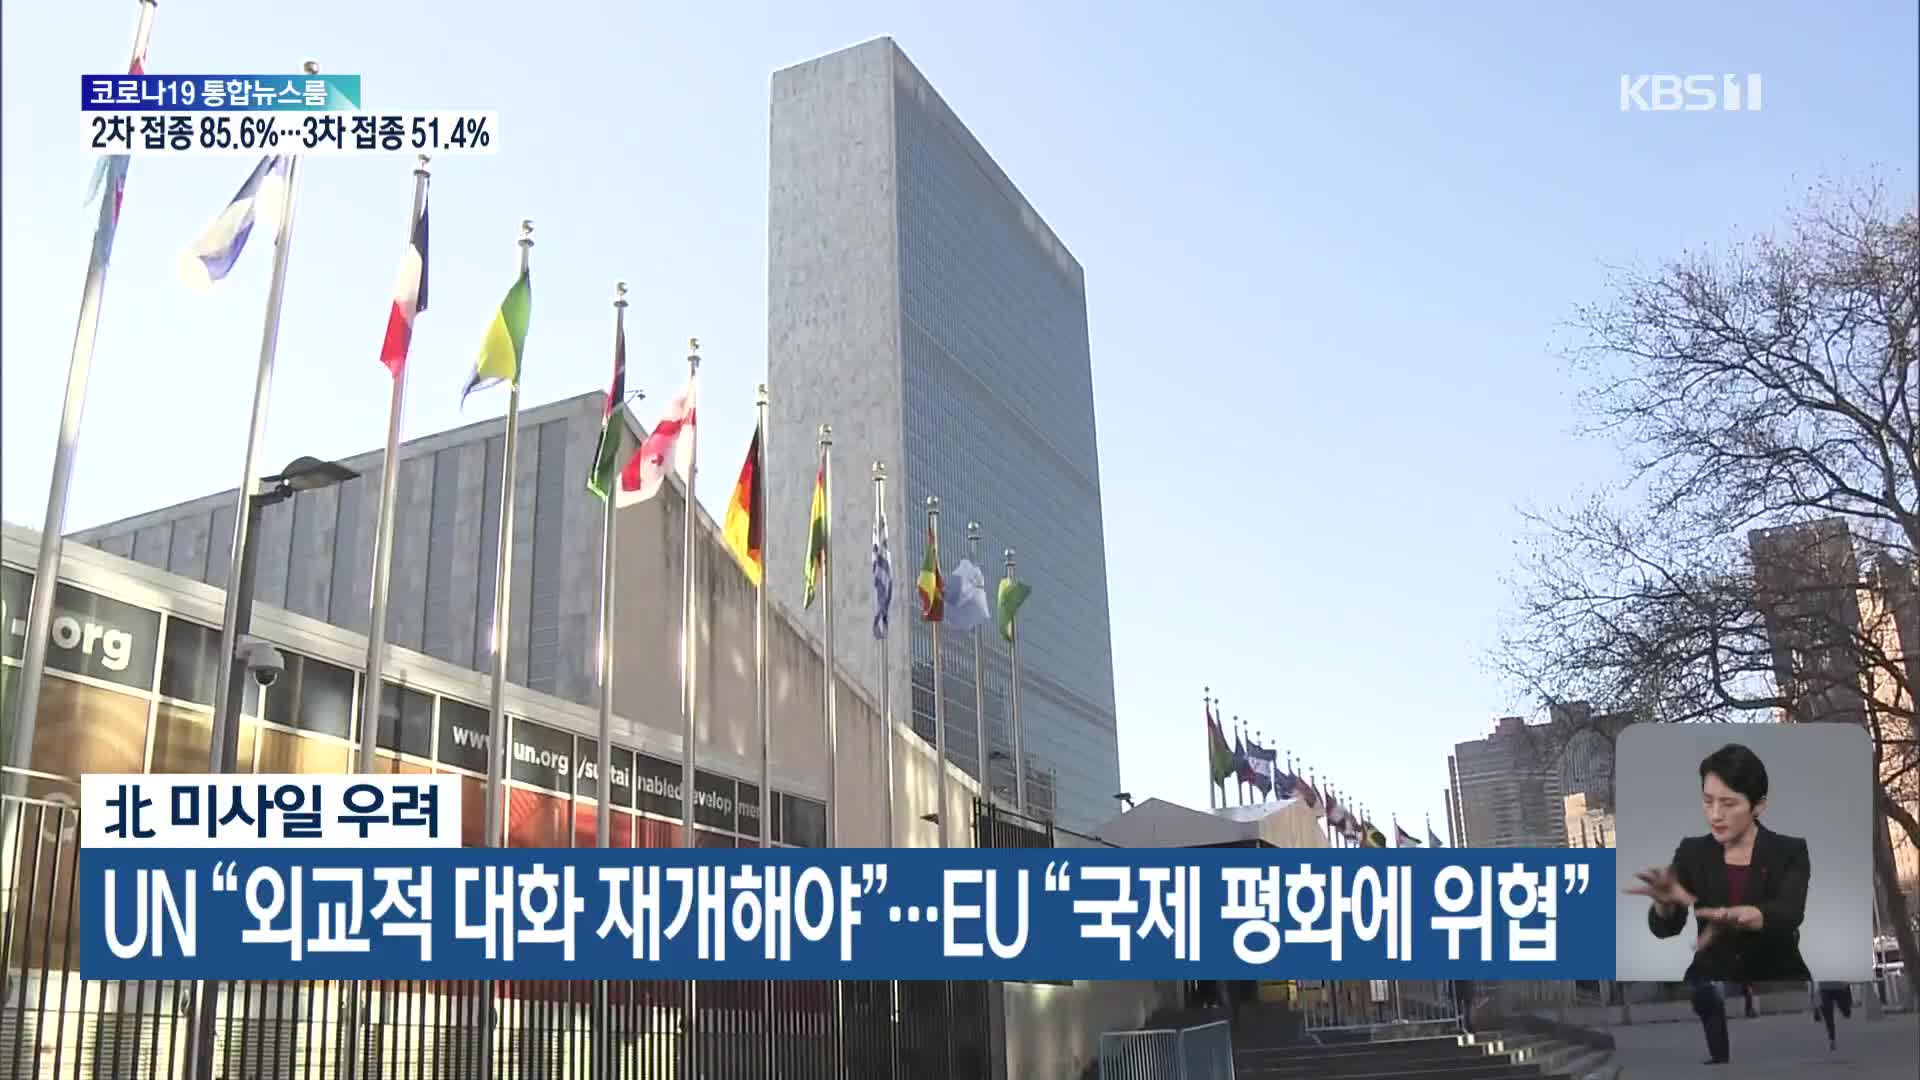 北 미사일 우려…UN “외교적 대화 재개해야” EU “국제 평화에 위협”